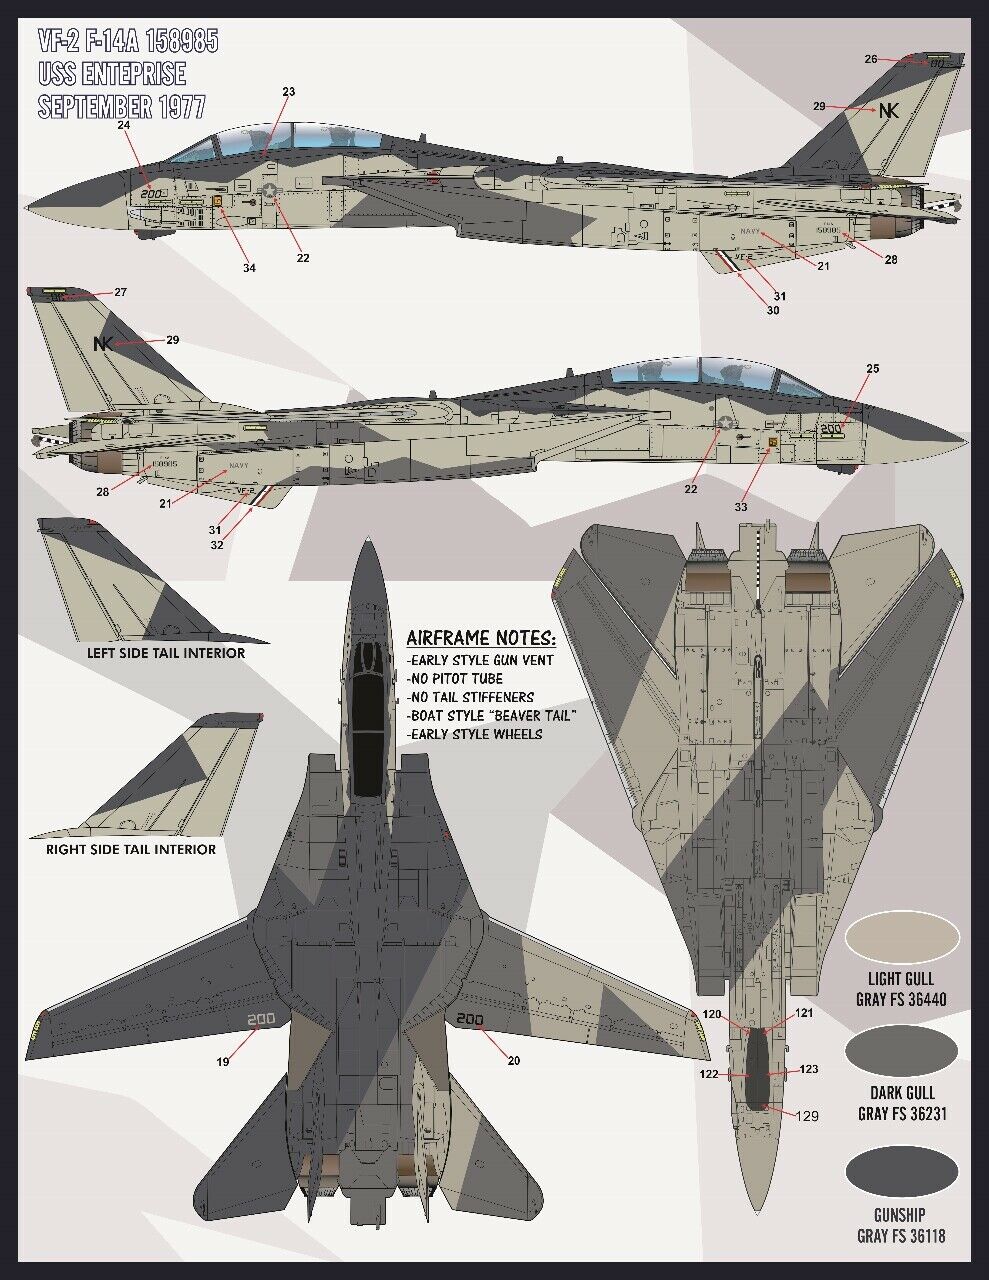 1/48 F-14A 雄猫战斗机"色彩与标记"(7) - 点击图像关闭